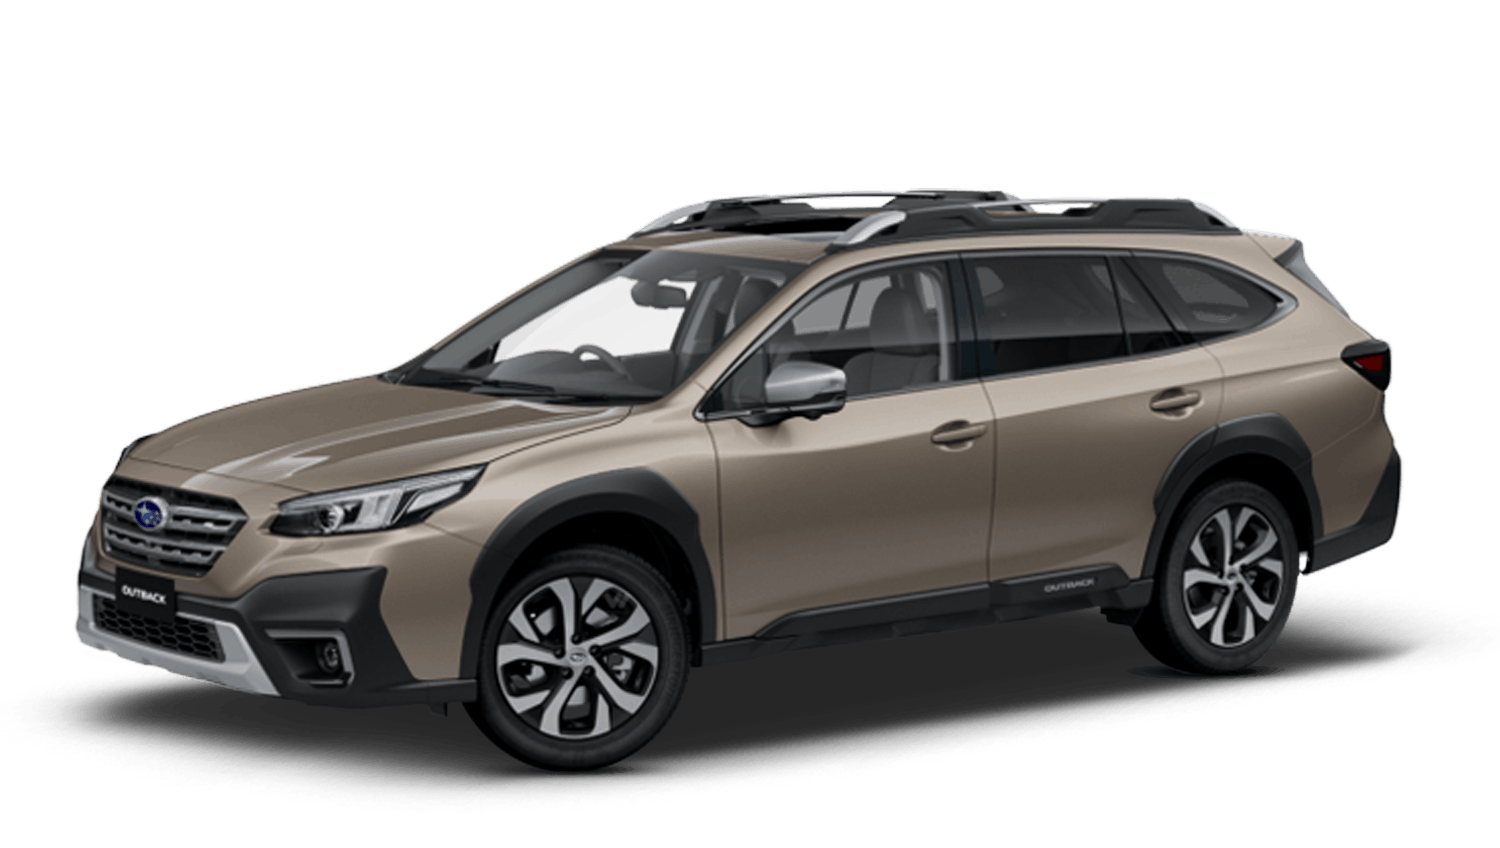 Brilliant Bronze (Metallic) All-New Subaru Outback